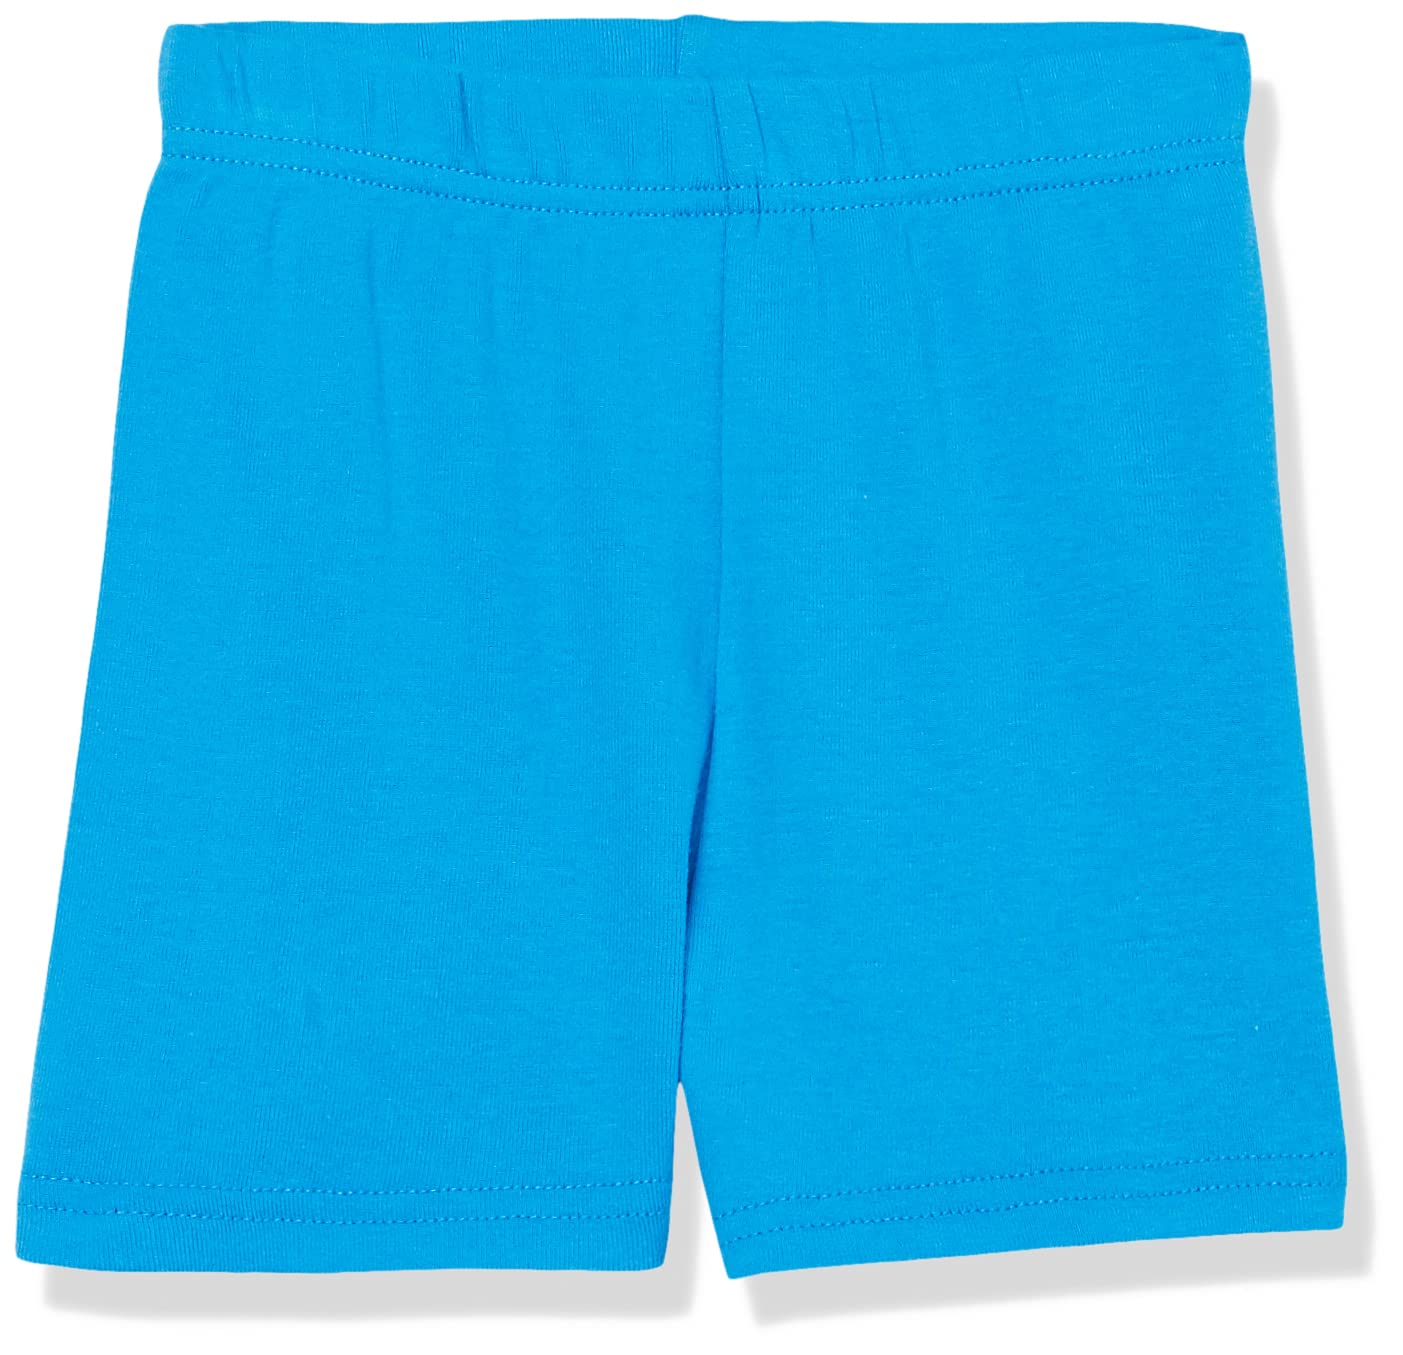 Nickelodeon Boys' Paw Patrol 6-Piece Snug-fit Cotton Pajamas Set